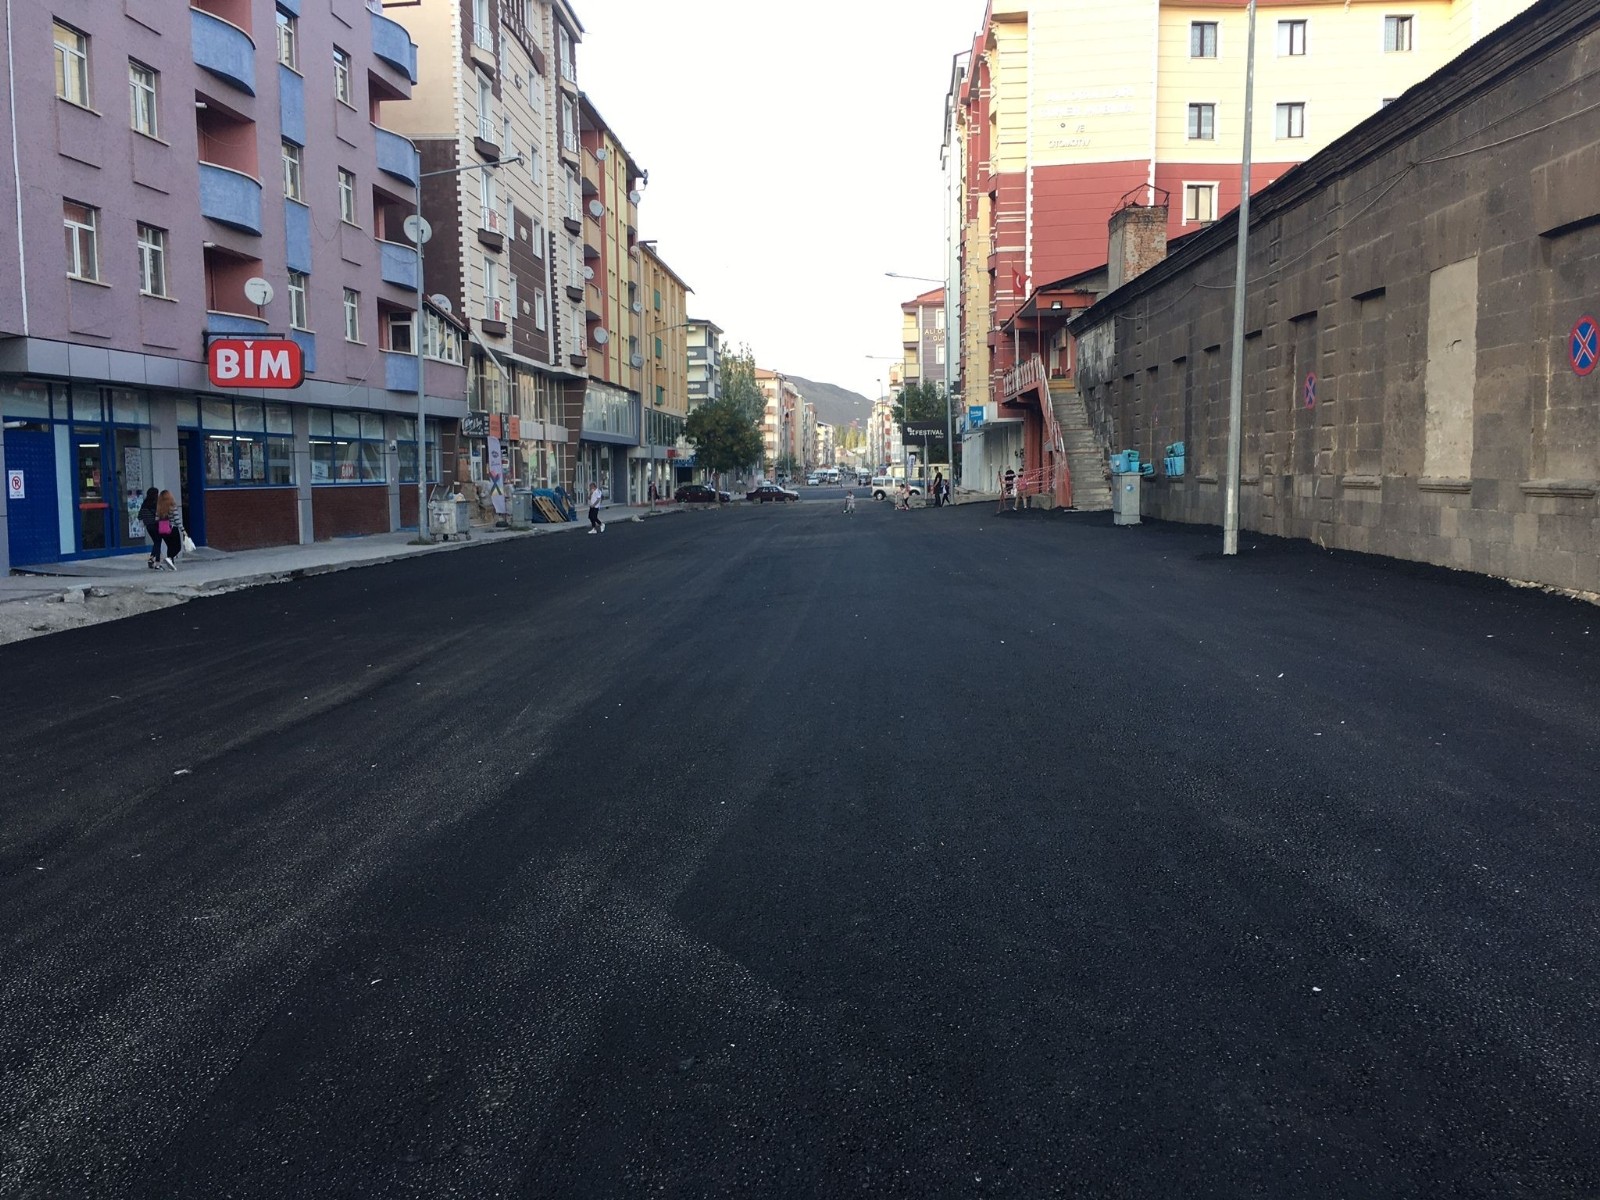 Kars’ta caddeler sıcak asfalt oldu #kars